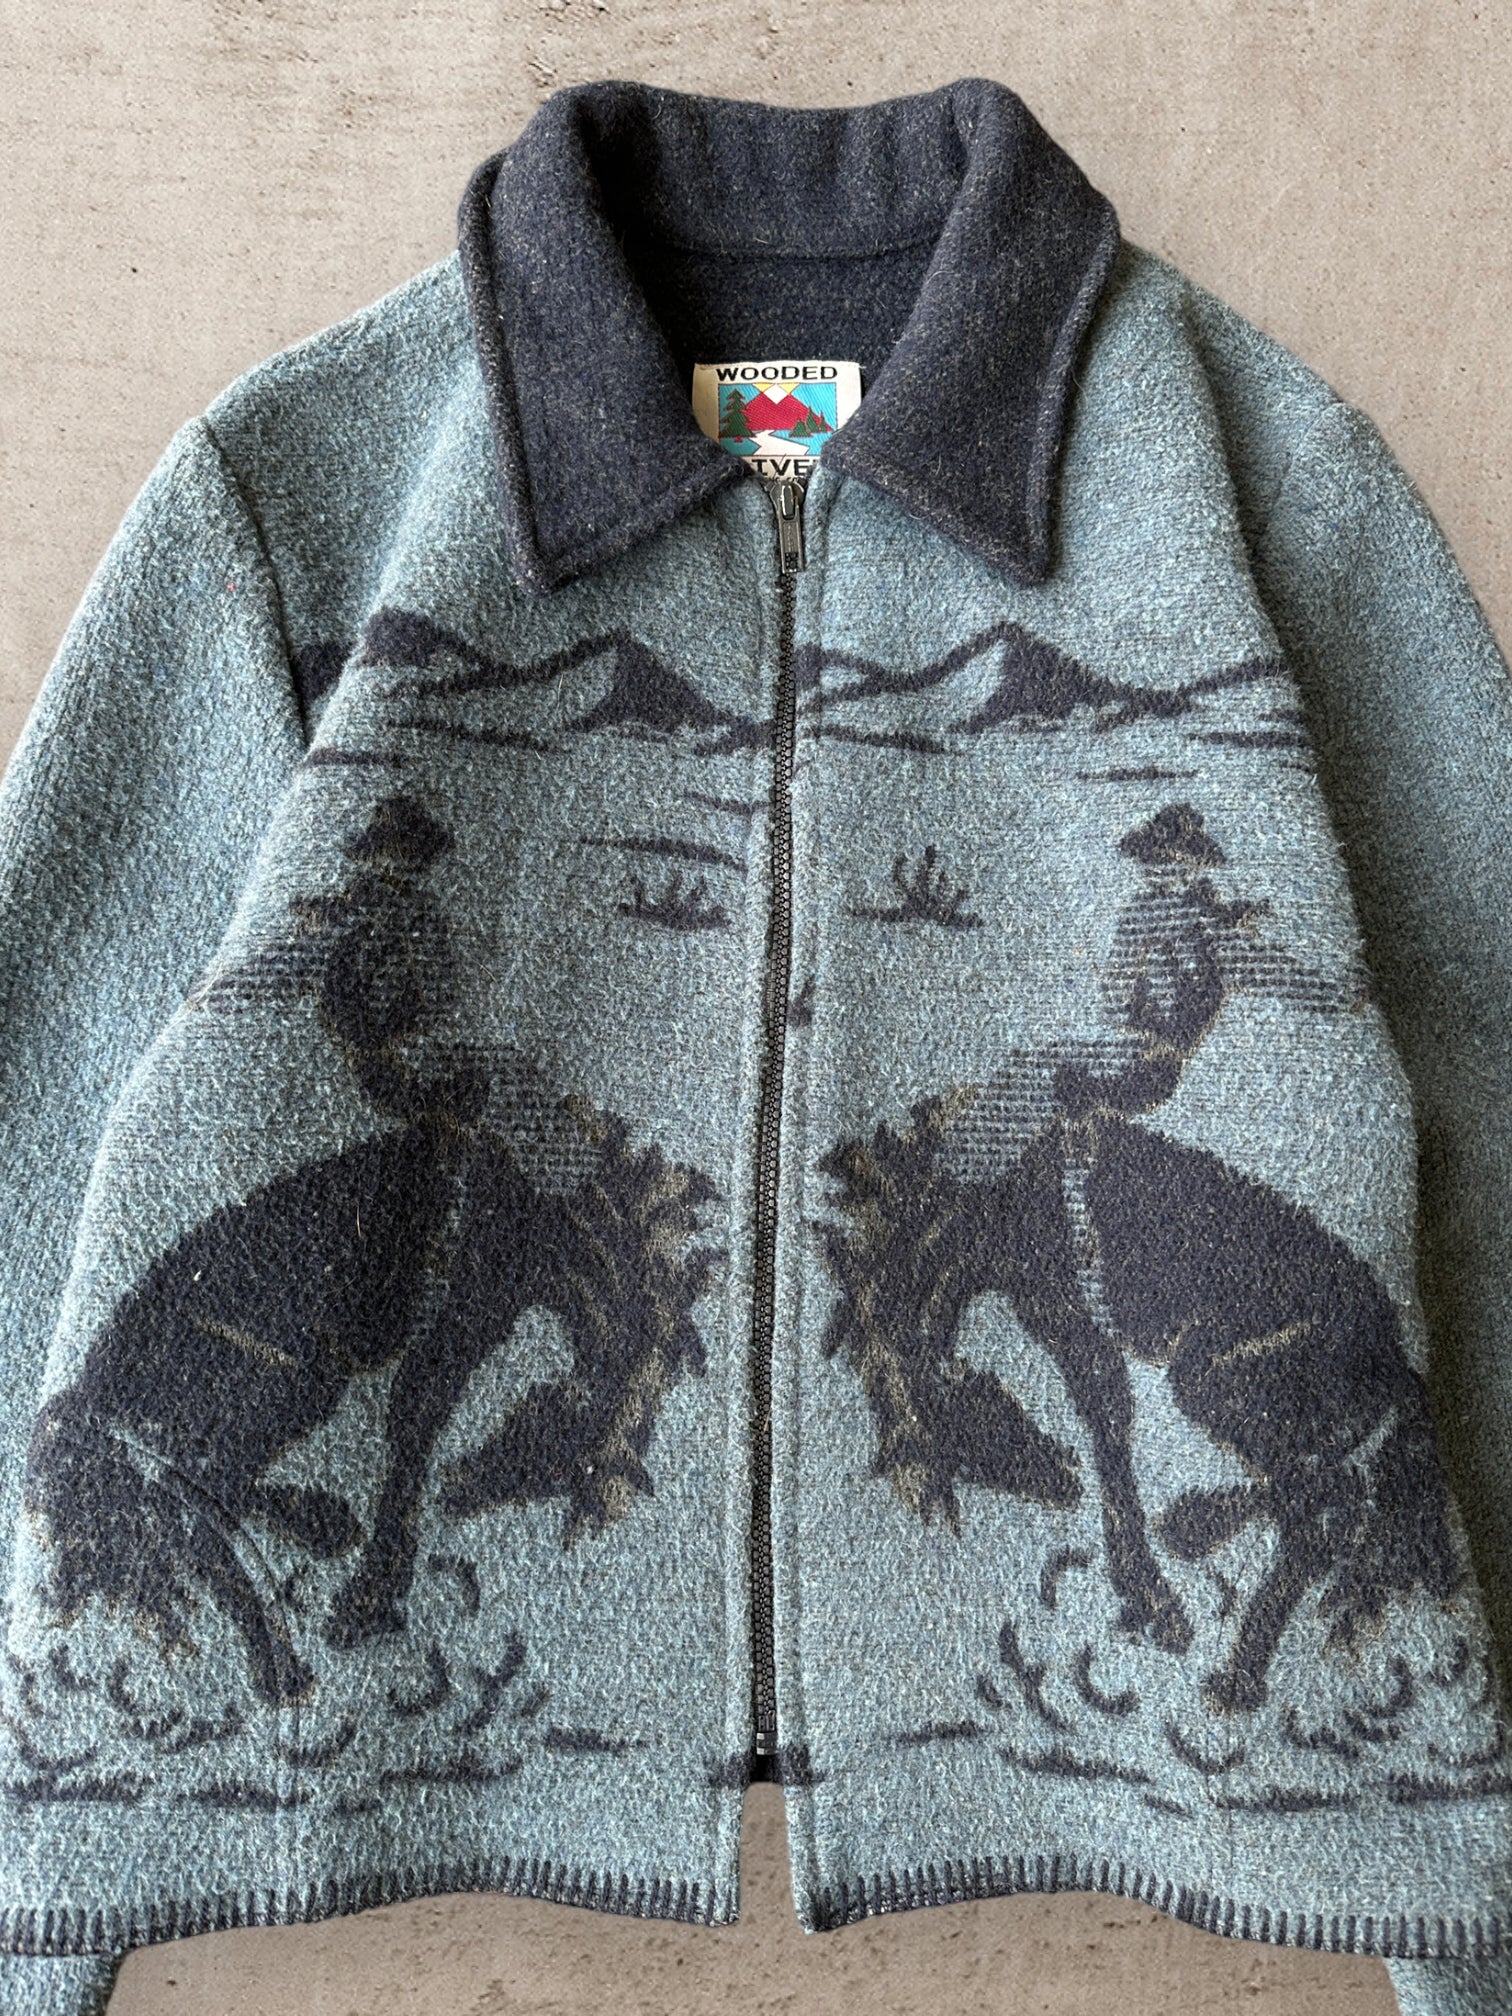 90s Western Wool Blend Jacket - Medium